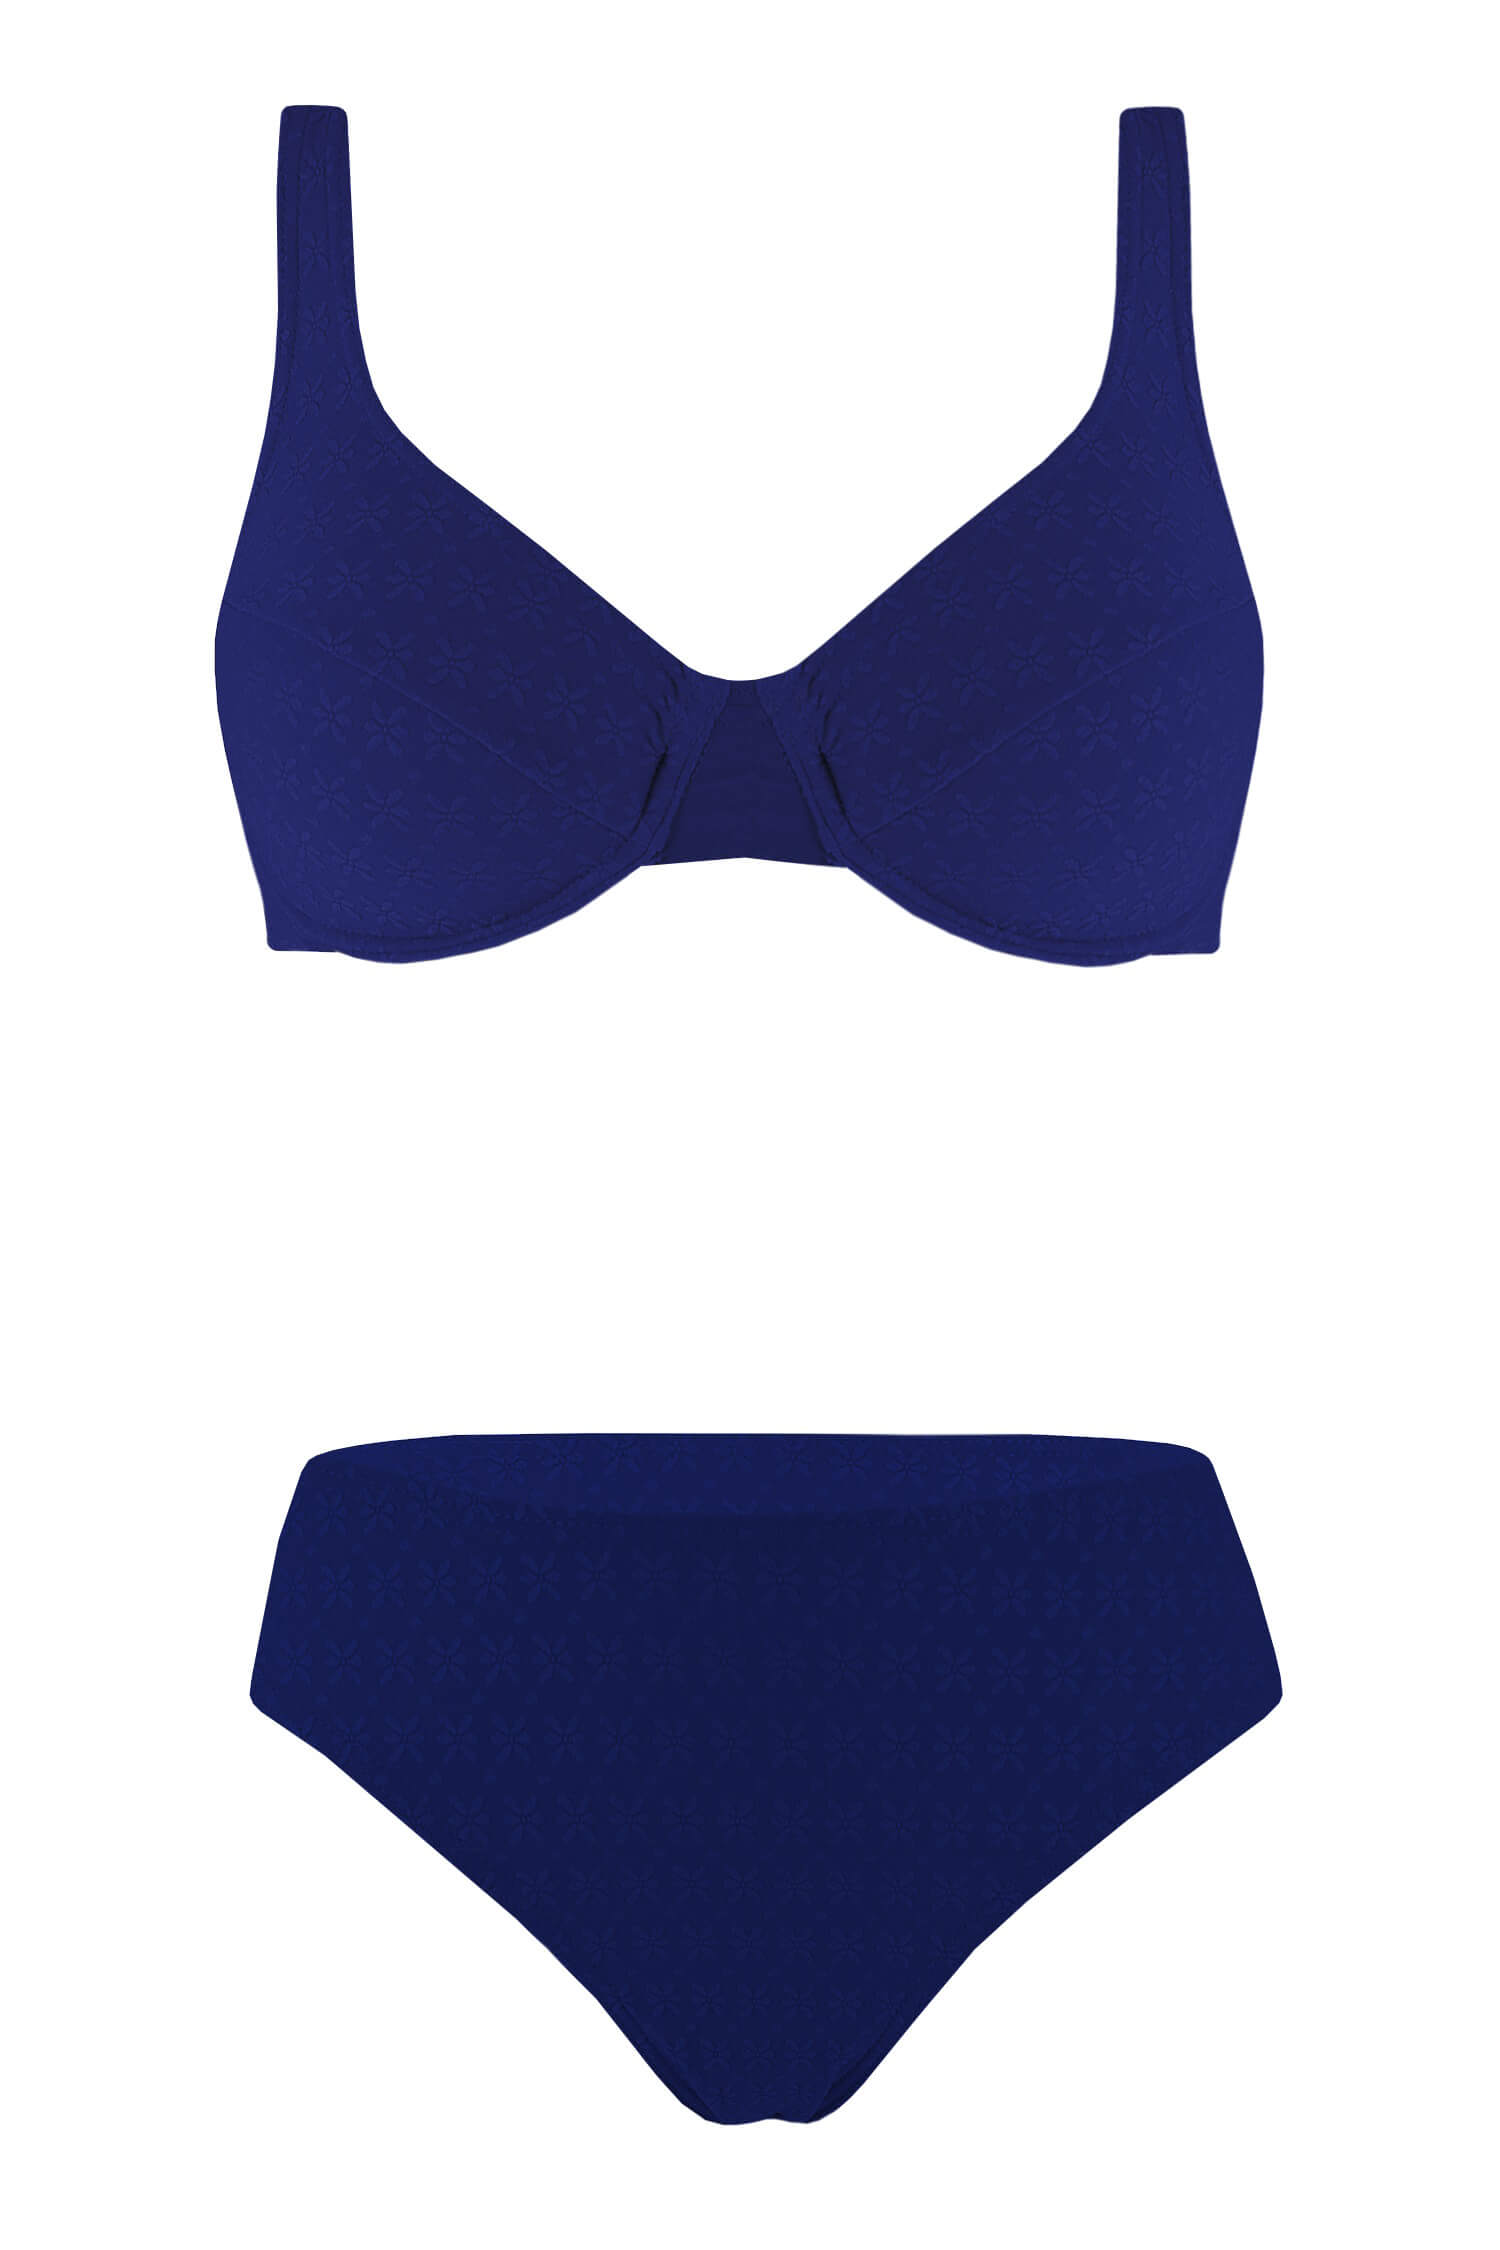 Estery dámské plavky nevyztužené XL tmavě modrá